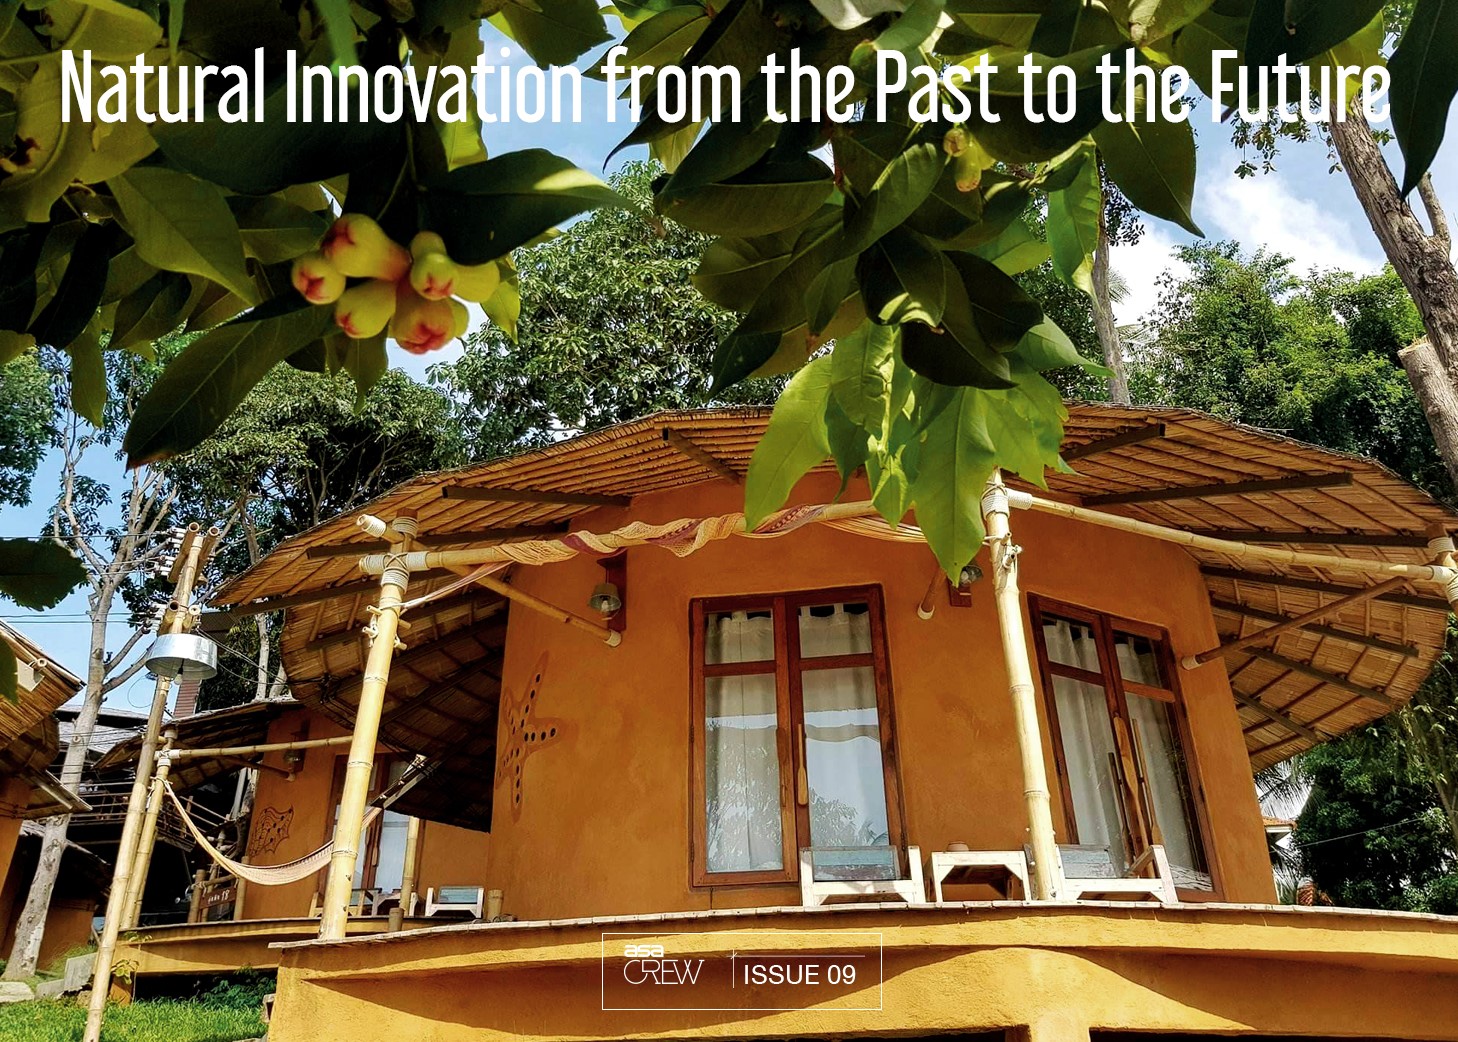 บ้านทางเลือกดินและไม้ไผ่ นวัตกรรมธรรมชาติจากอดีตสู่อนาคต